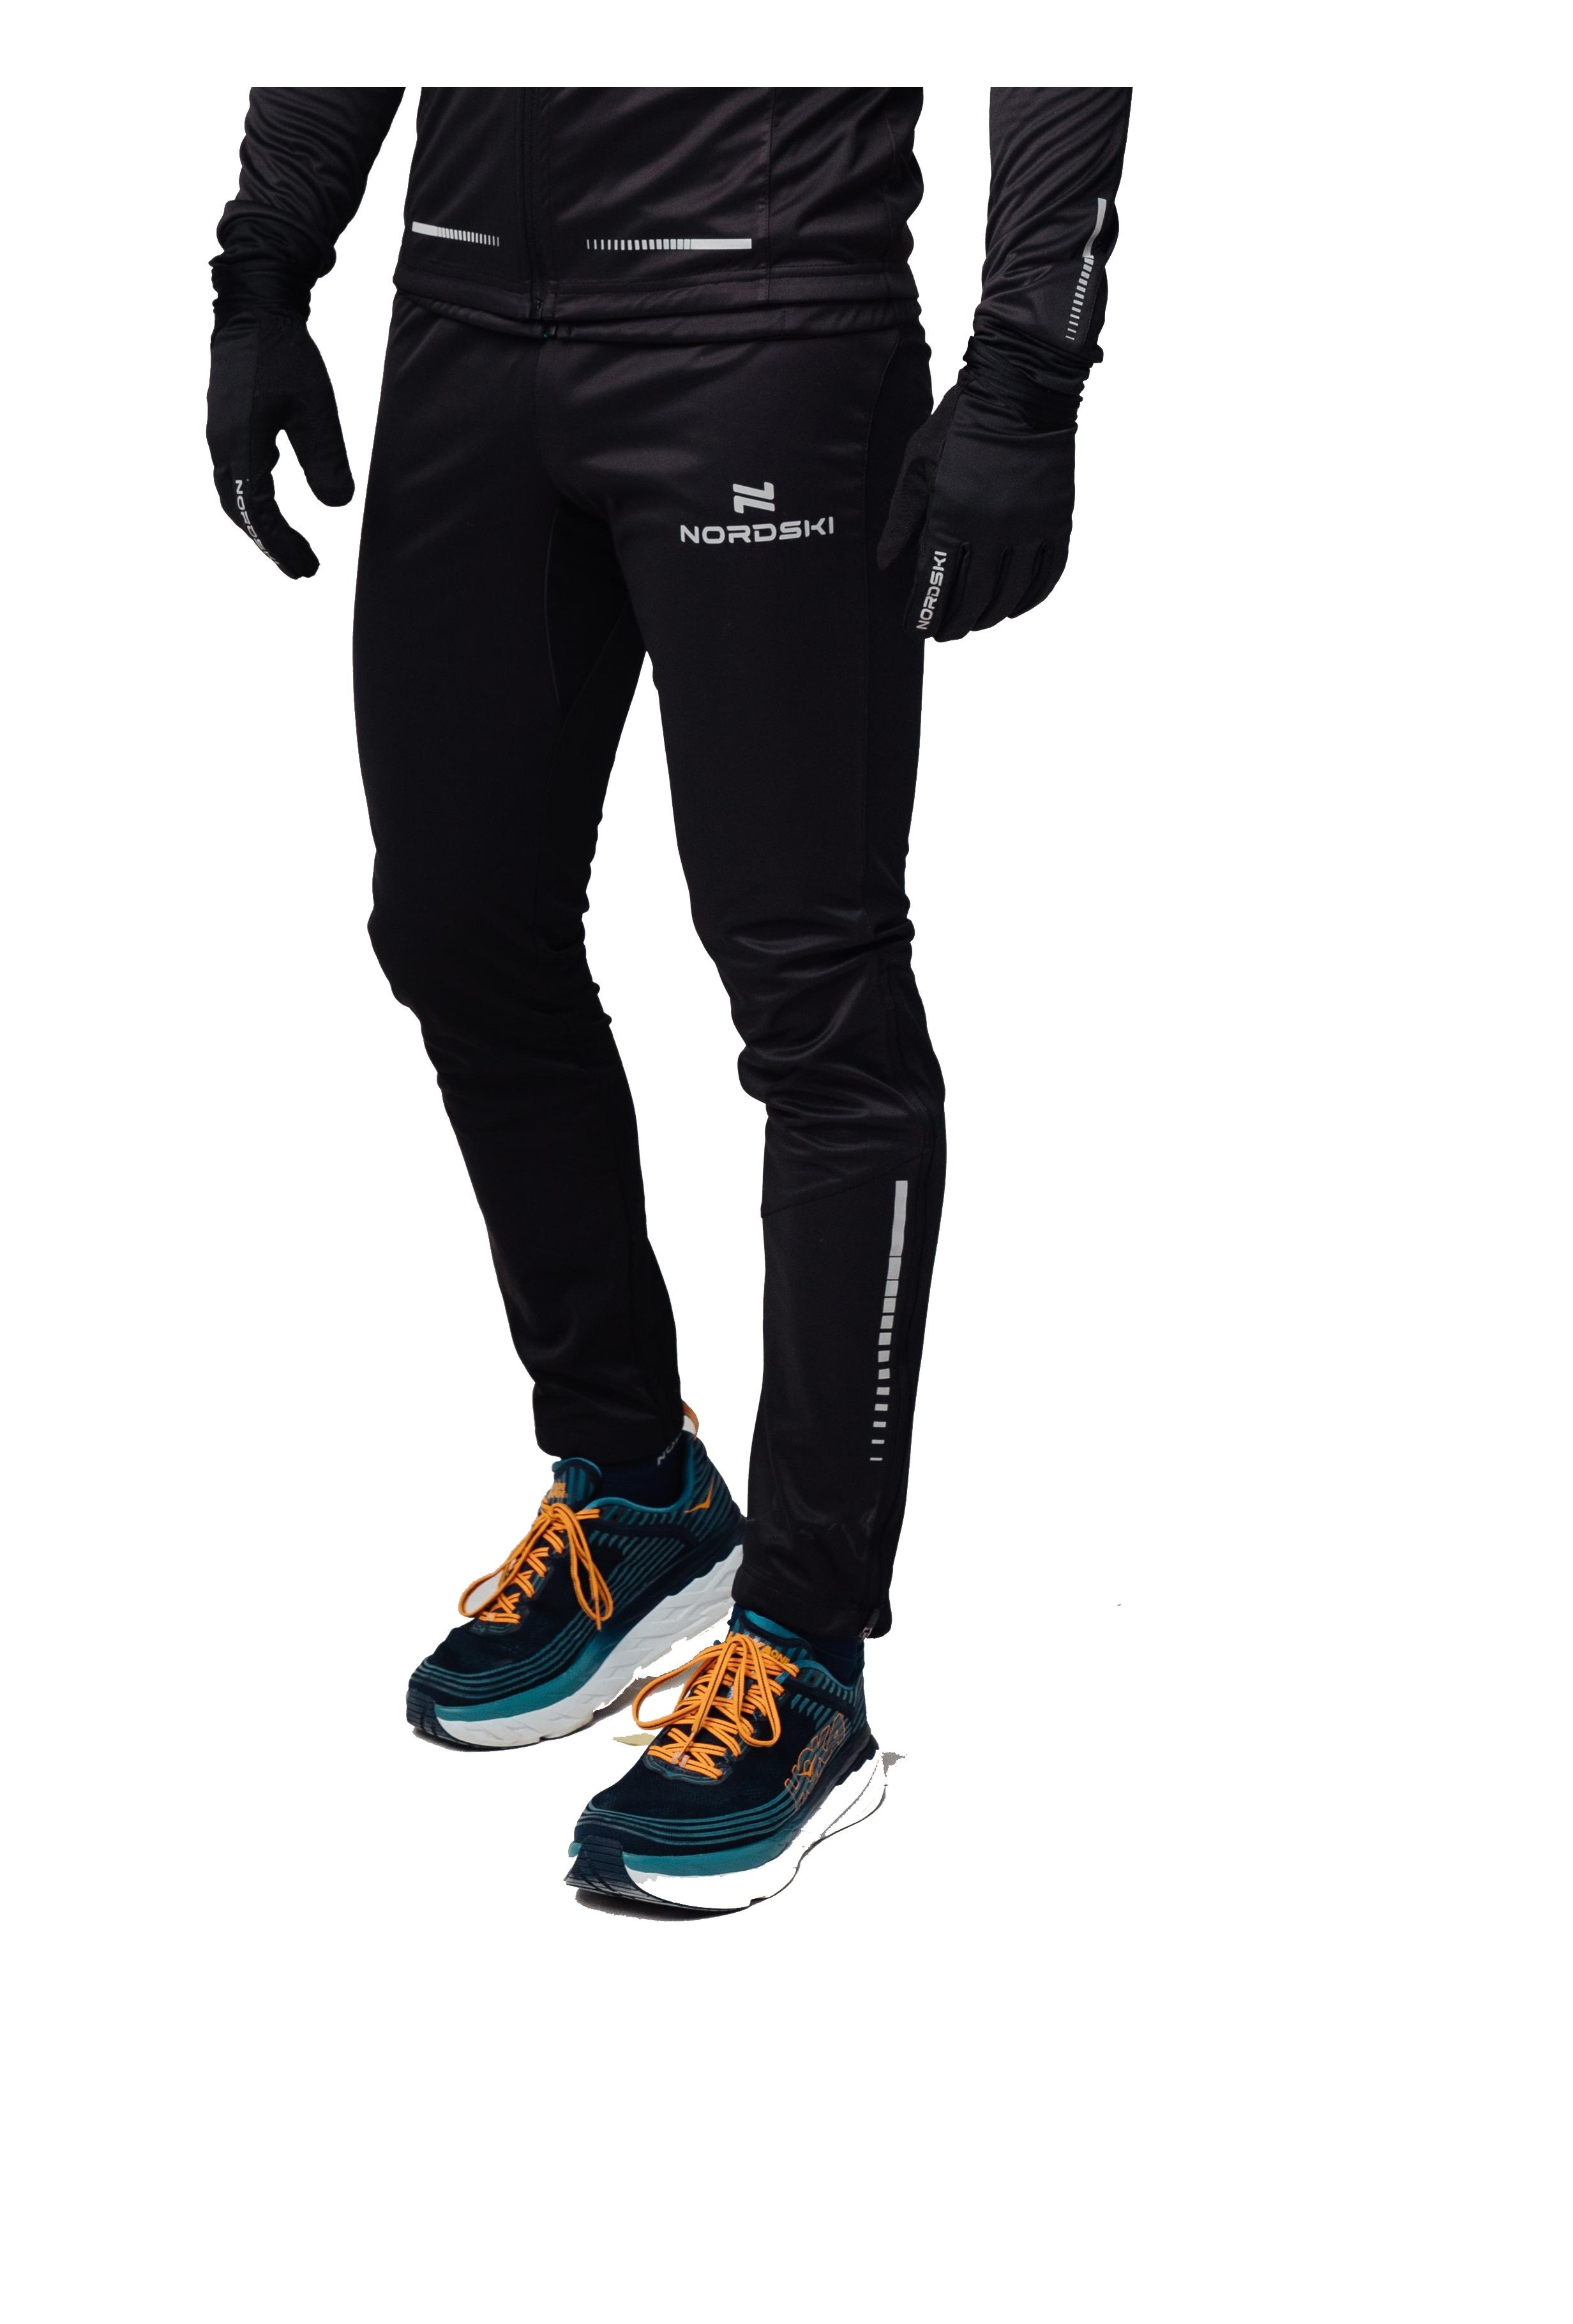 фото Спортивные брюки мужские nordski pro черные s